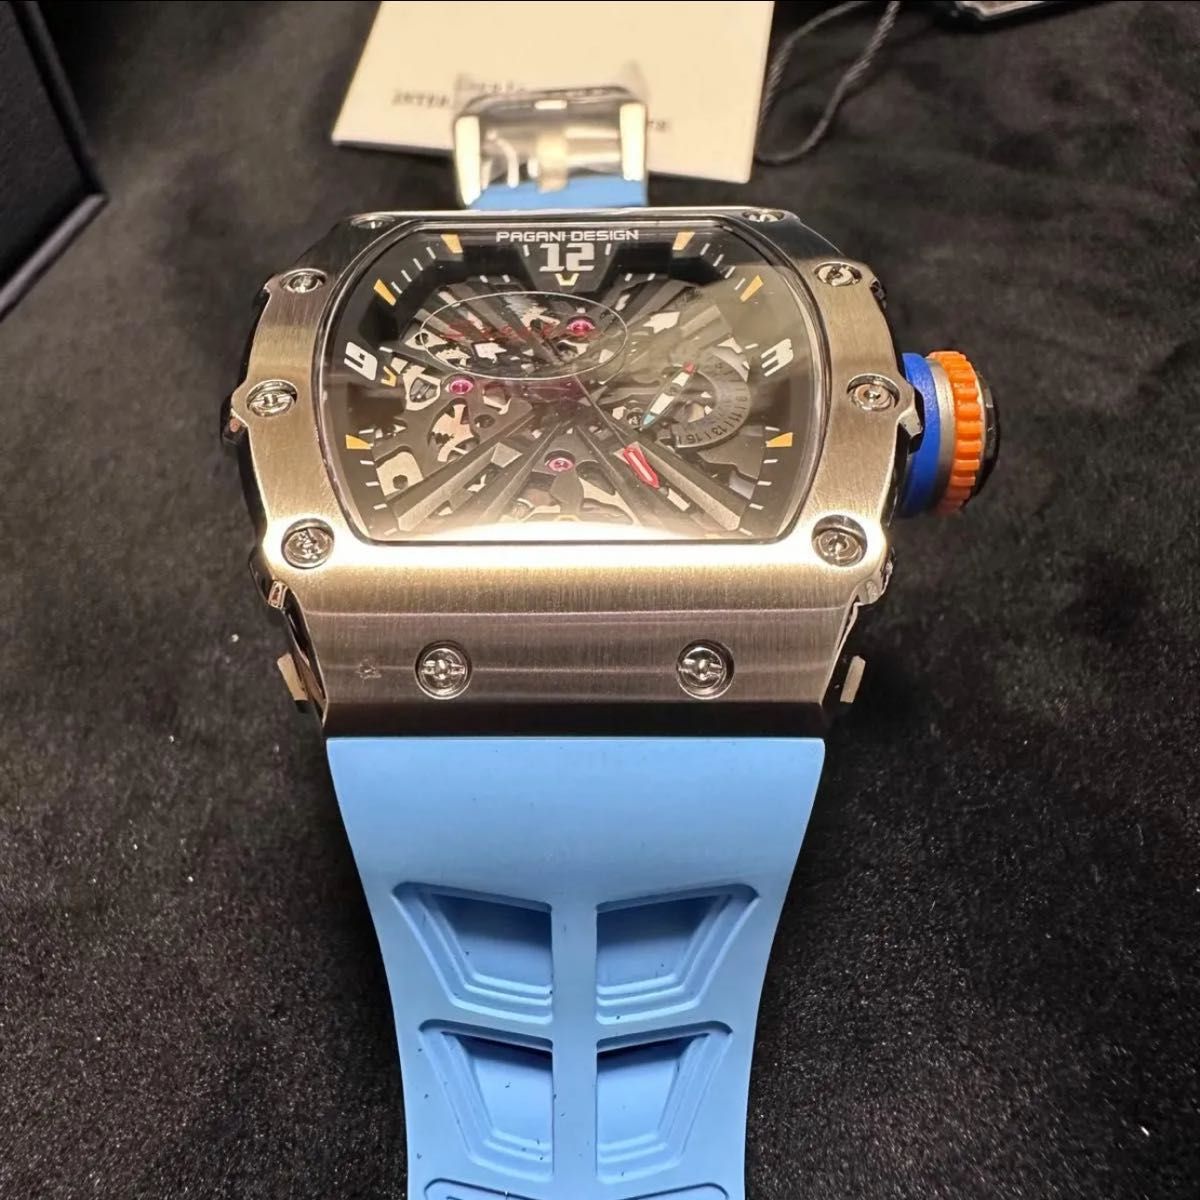 パガーニデザイン 腕時計 トノー型 リシャールミル オマージュ ウォッチ